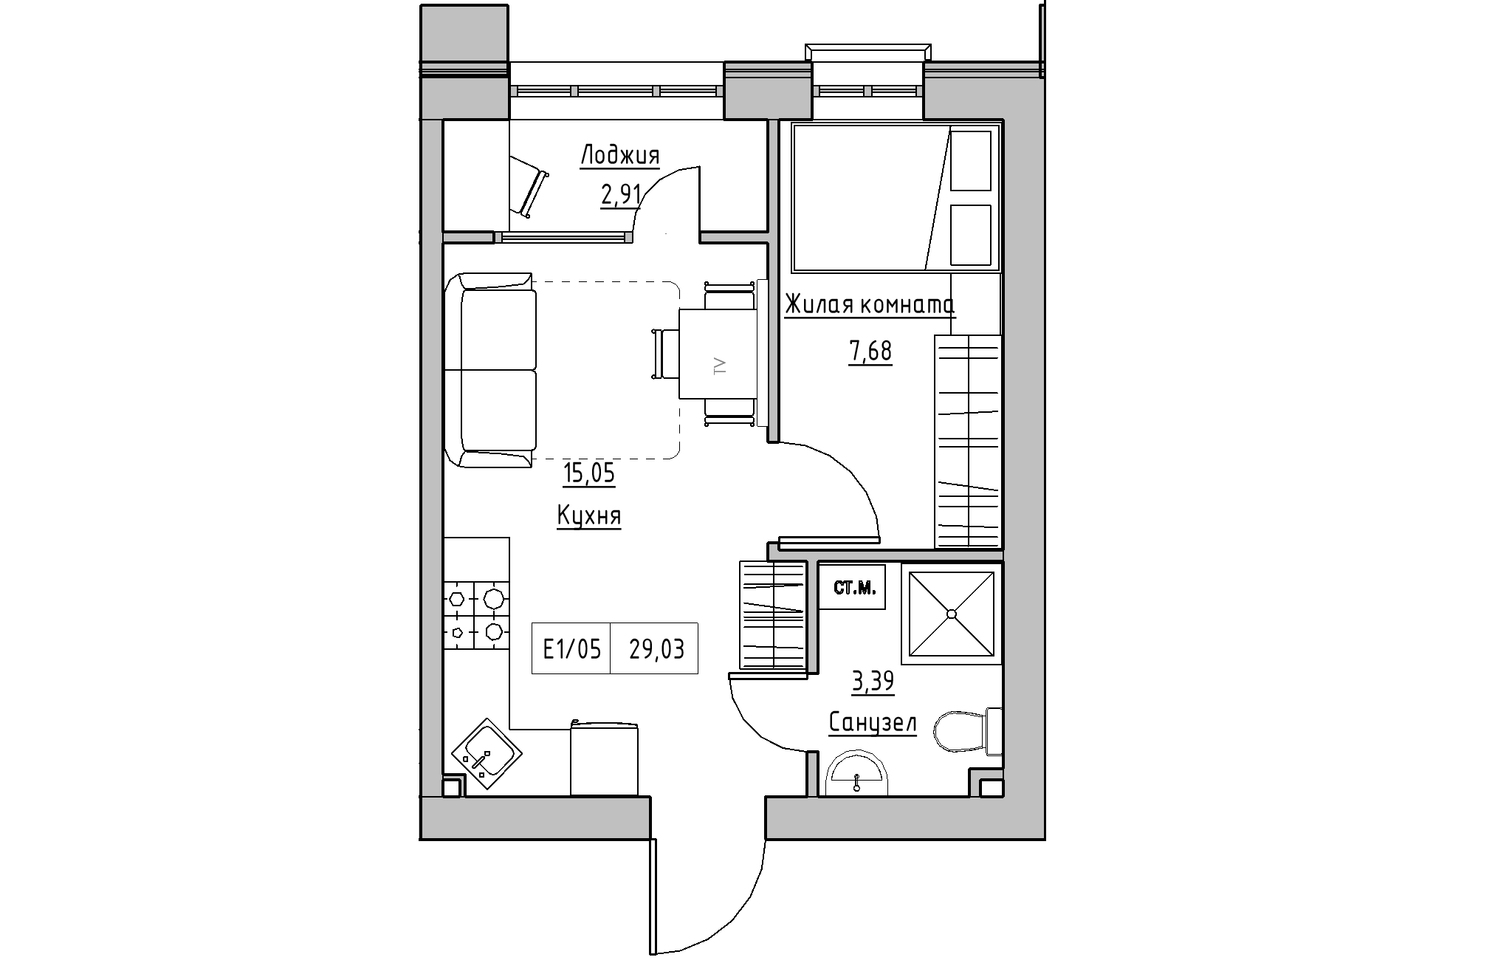 Планировка 1-к квартира площей 29.03м2, KS-010-04/0007.